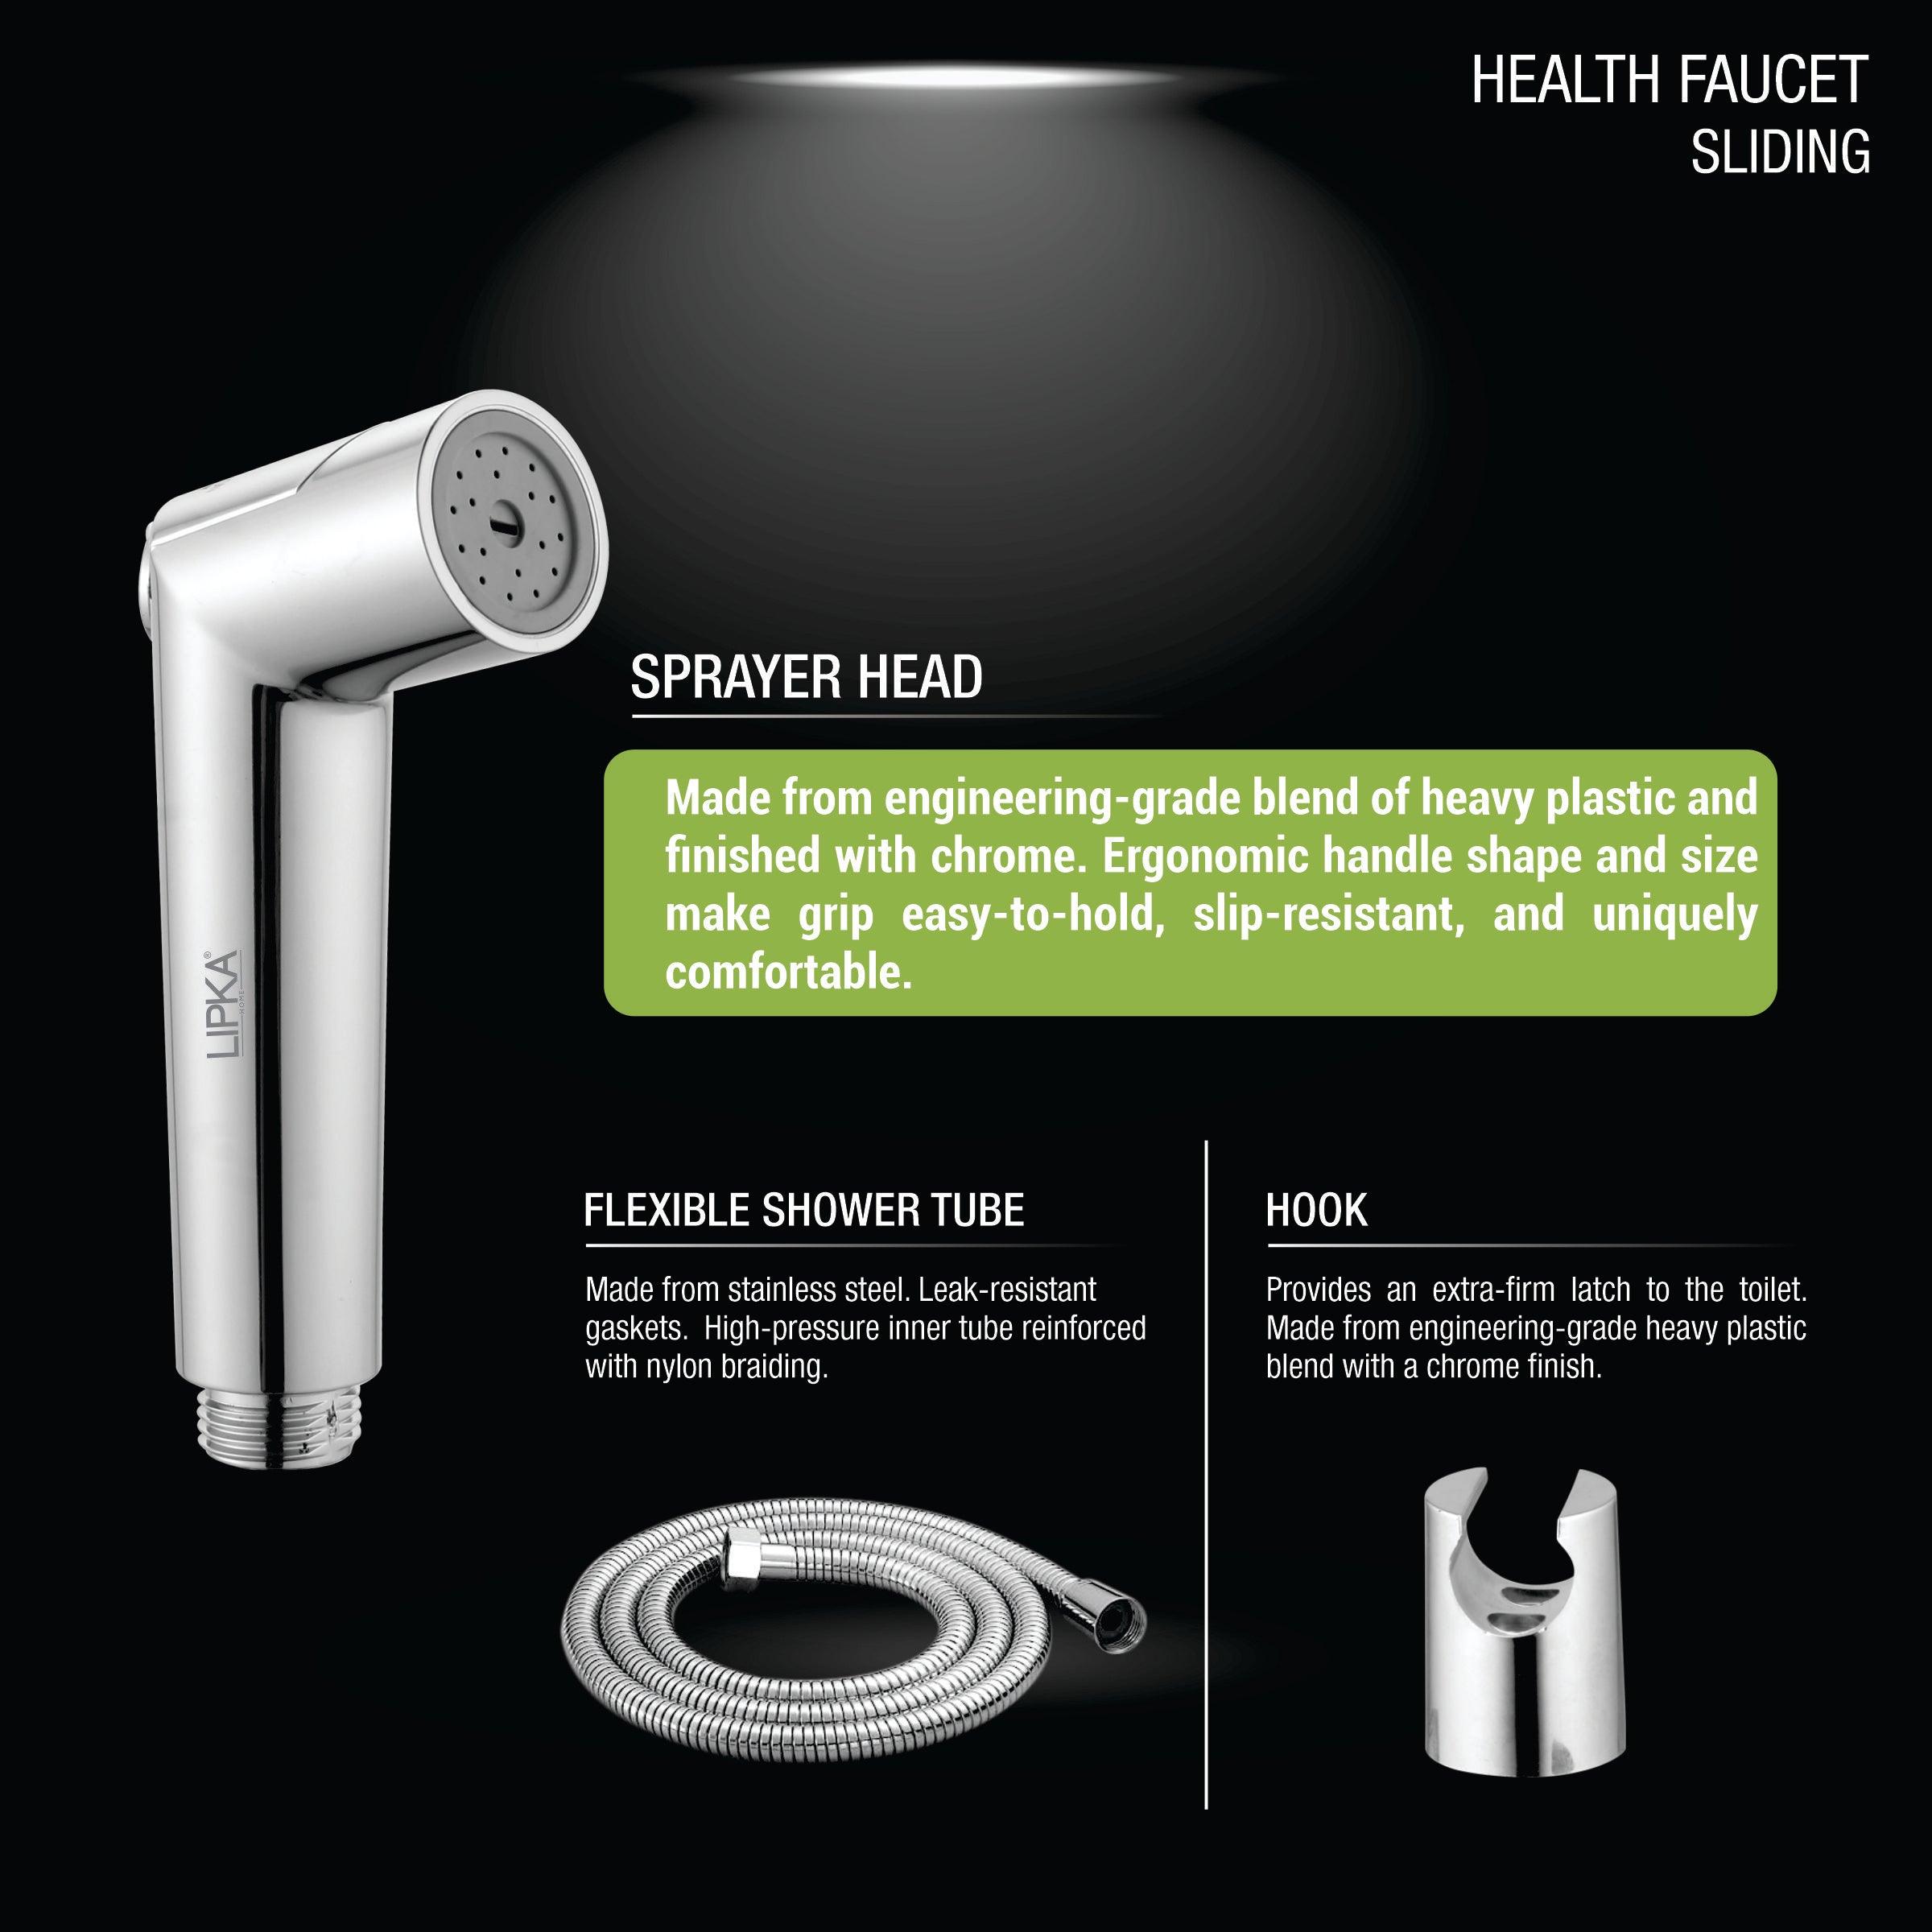 Sliding Health Faucet (Complete Set) product description